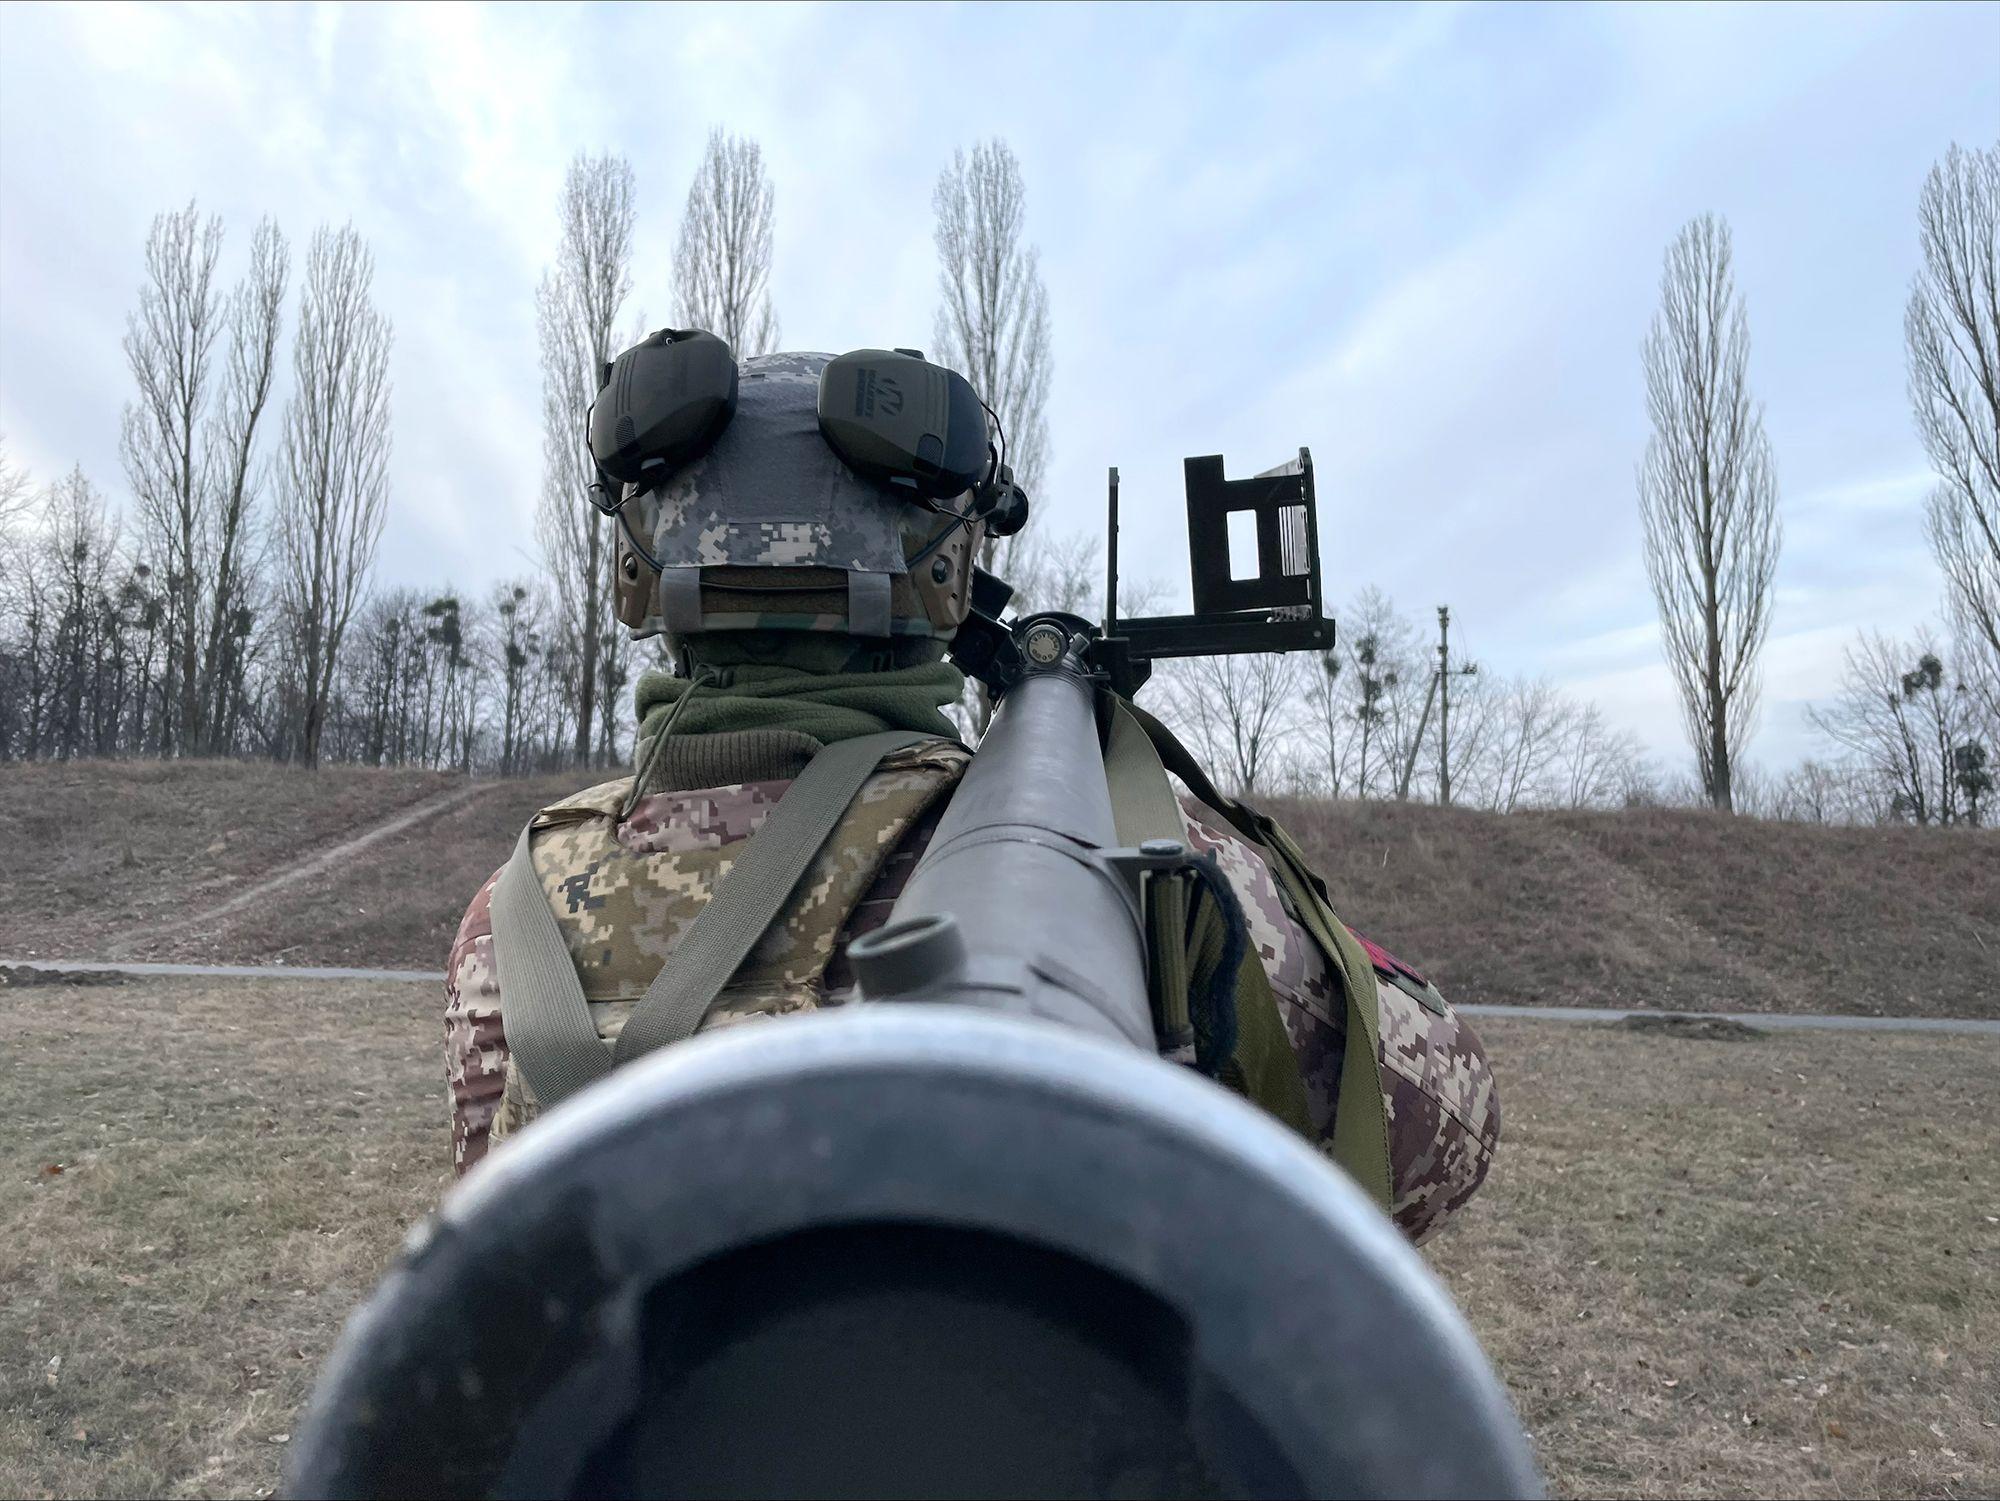 ataques de mísseis, drones de combate, camuflagem noturna: kiev alerta que rússia pode dominar as defesas aéreas